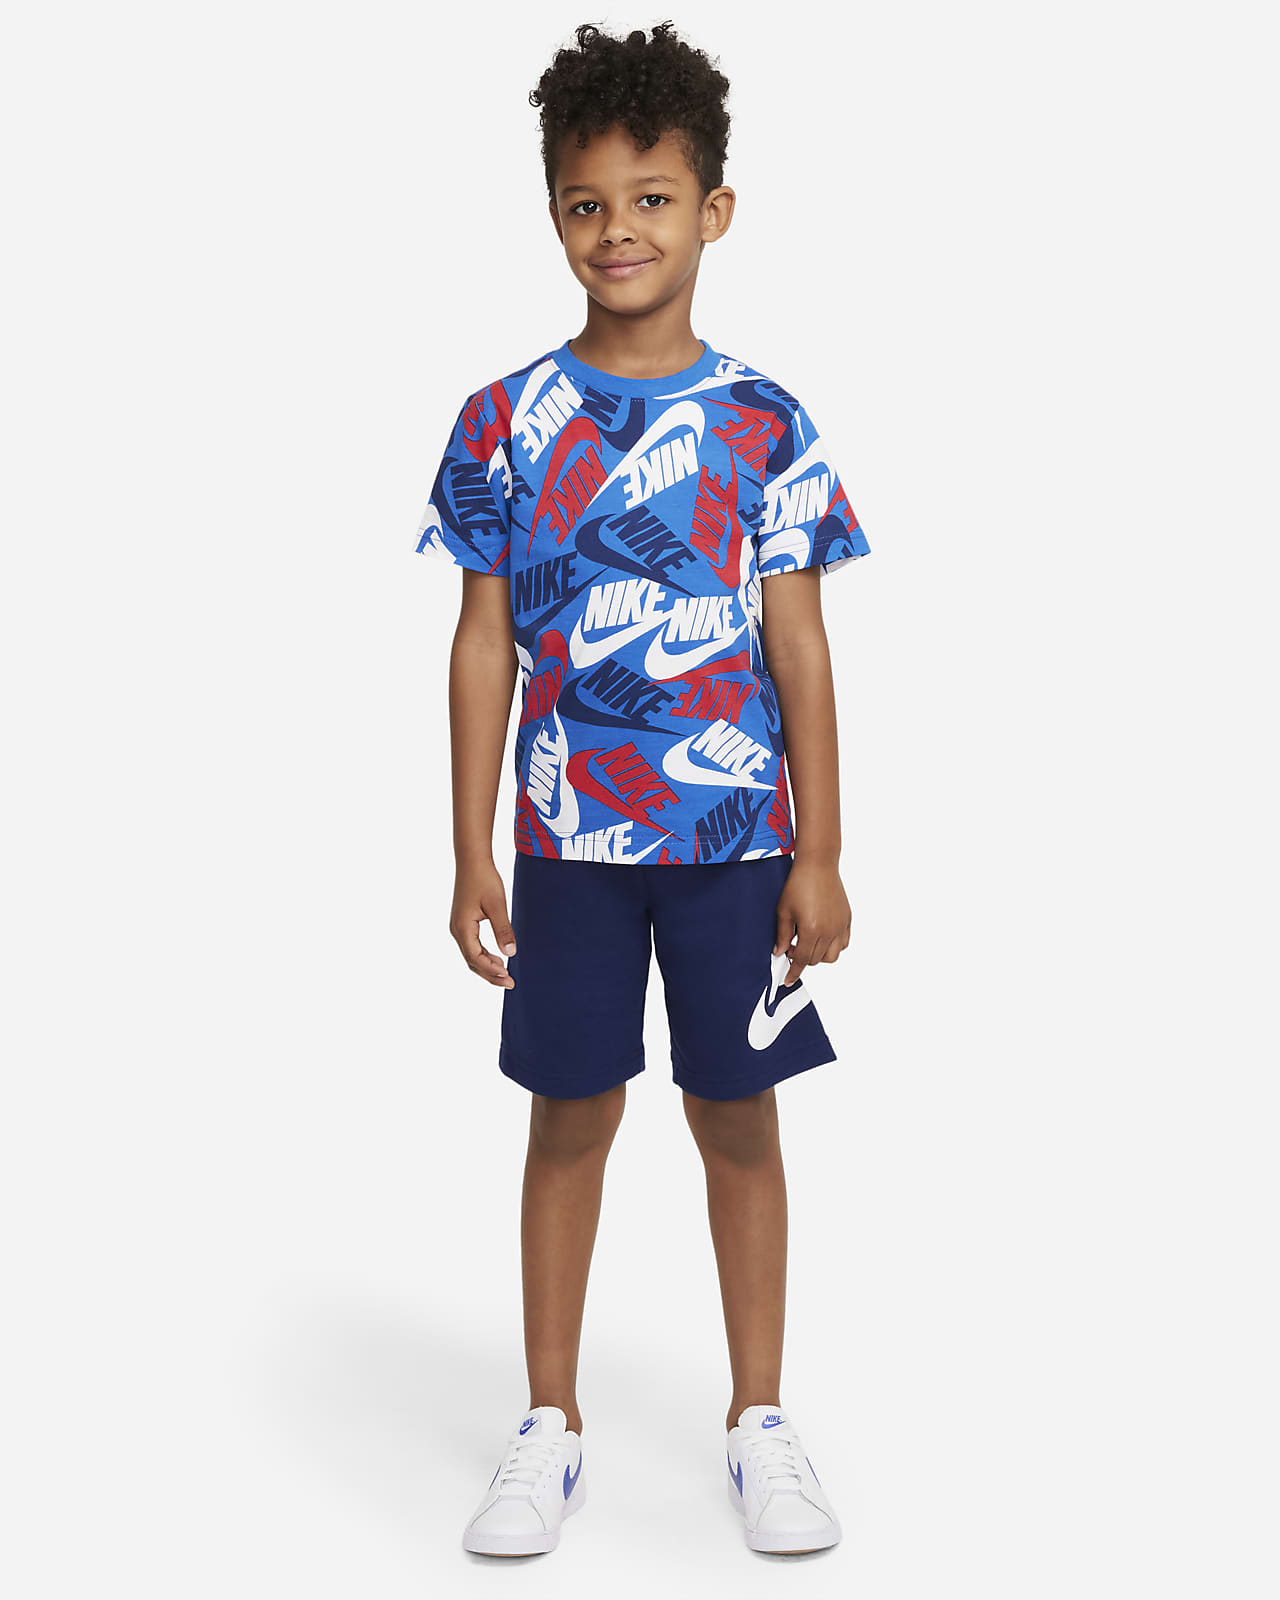 Nike Sportswear T-Shirt und Shorts für jüngere Kinder